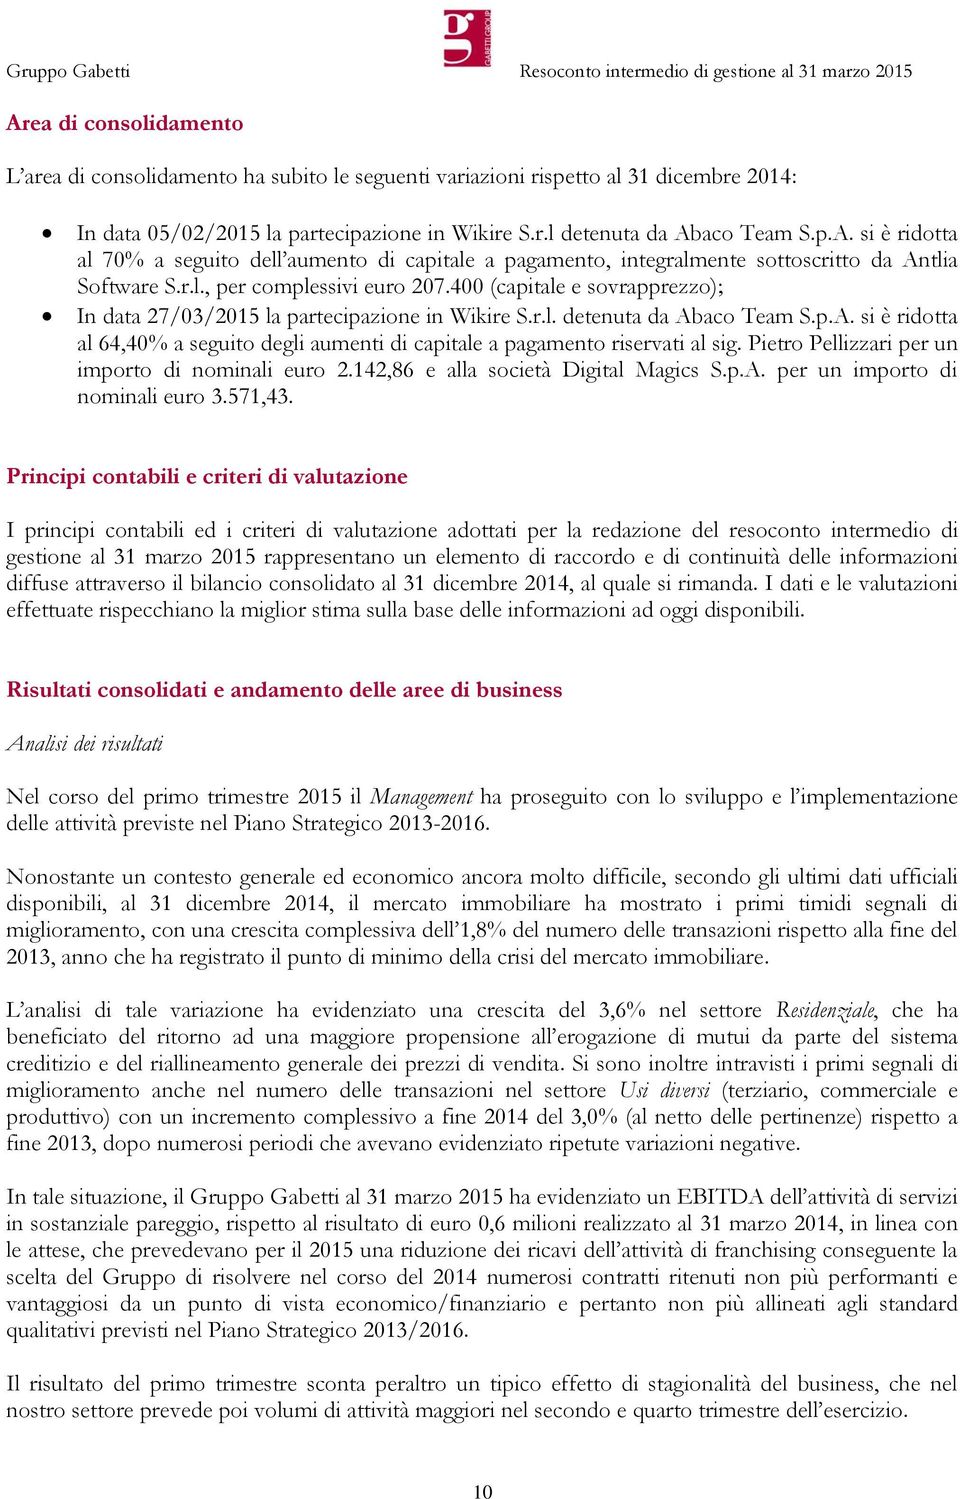 aco Team S.p.A. si è ridotta al 64,40% a seguito degli aumenti di capitale a pagamento riservati al sig. Pietro Pellizzari per un importo di nominali euro 2.142,86 e alla società Digital Magics S.p.A. per un importo di nominali euro 3.